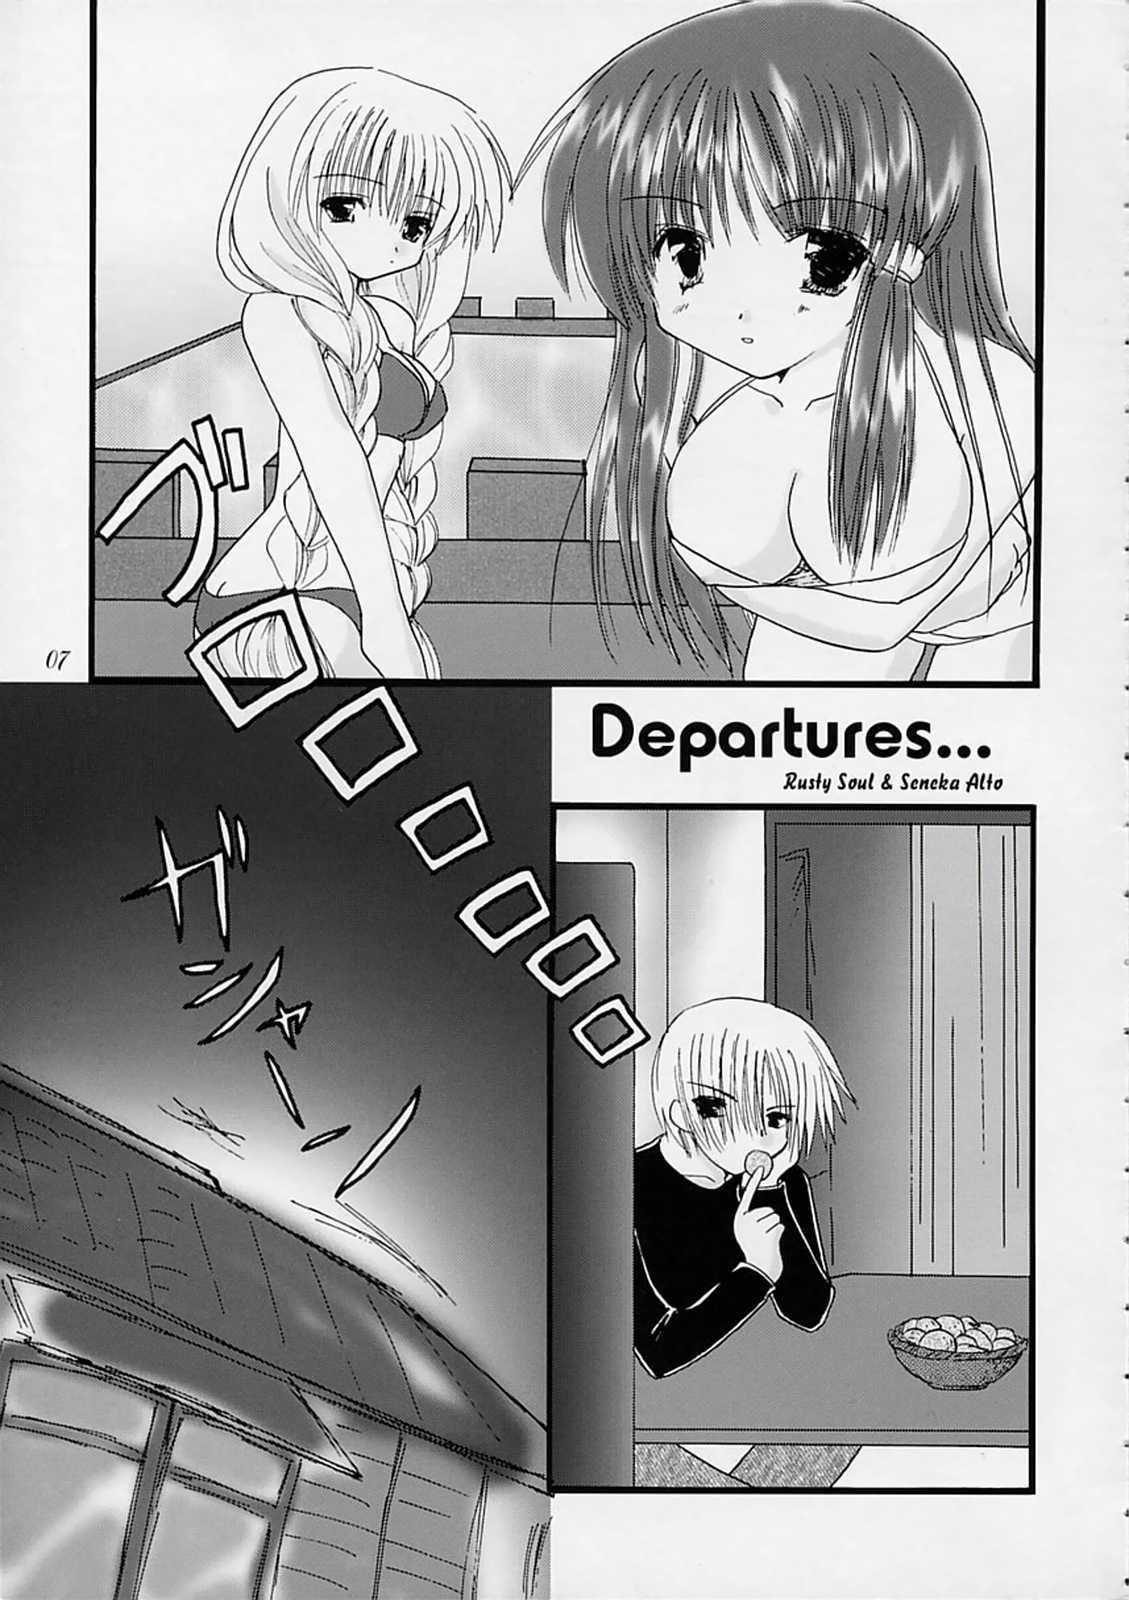 departures 5